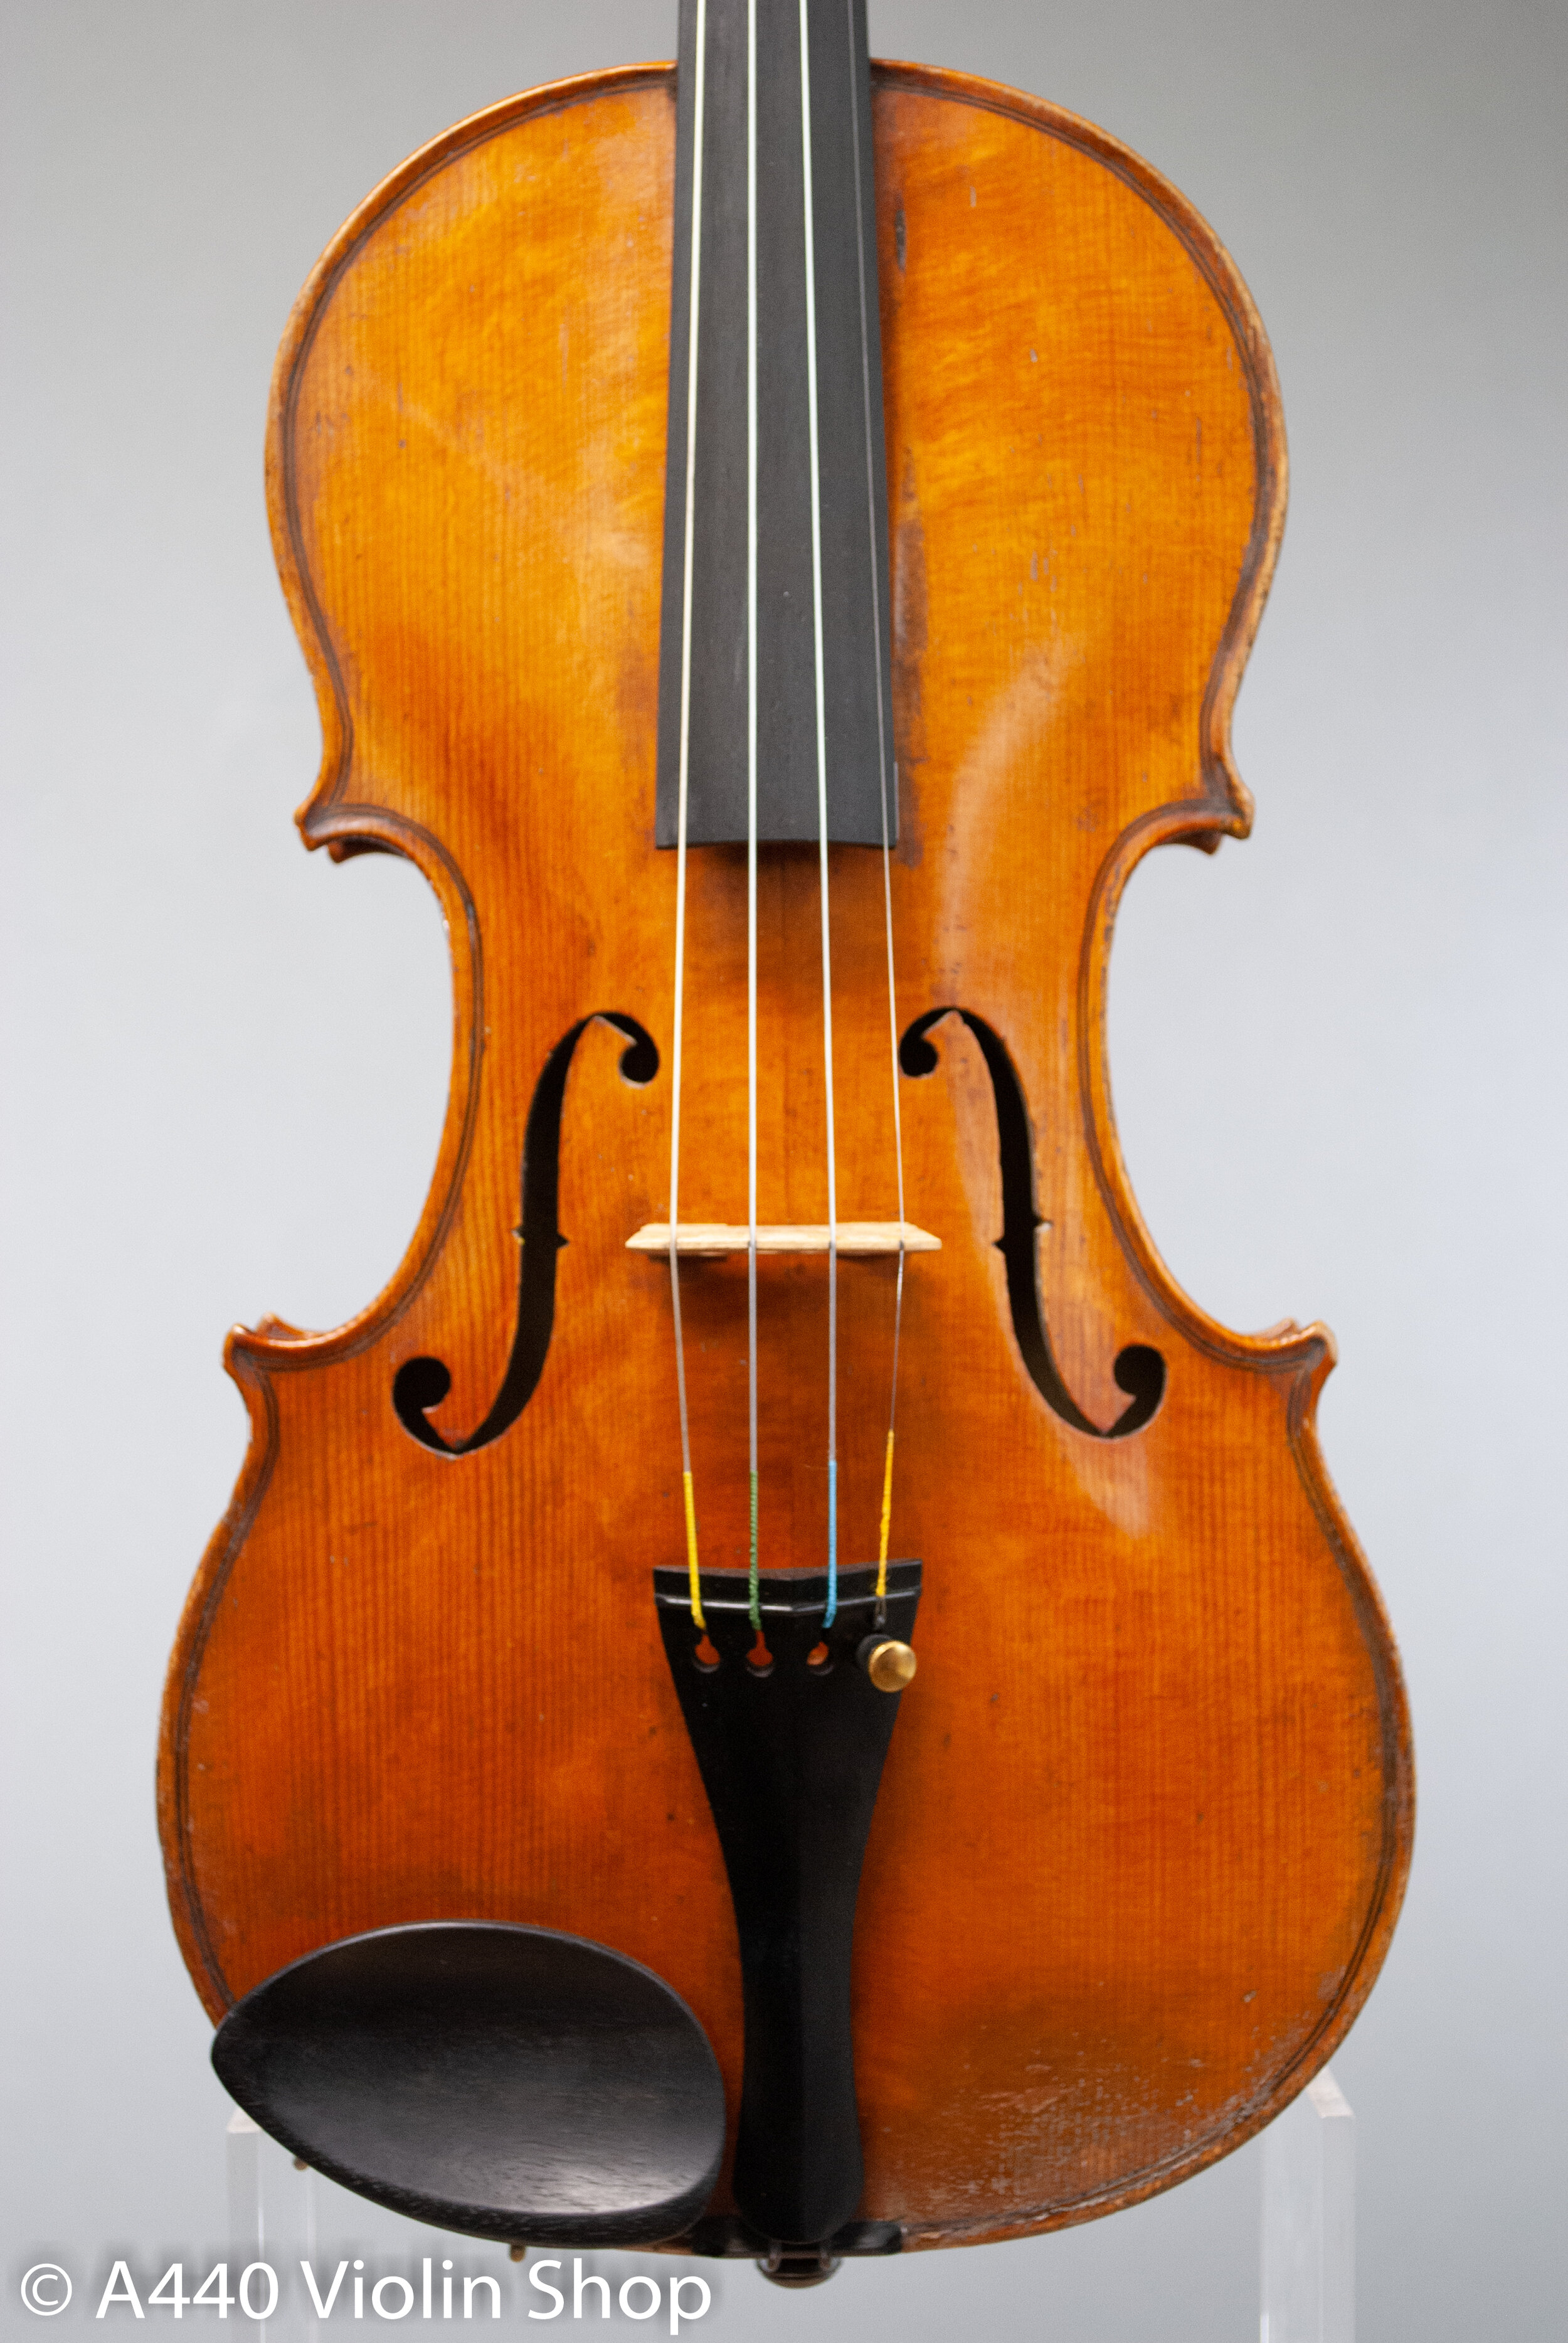 køber opskrift komedie French Workshop Violin circa 1940 — A440 Violin Shop